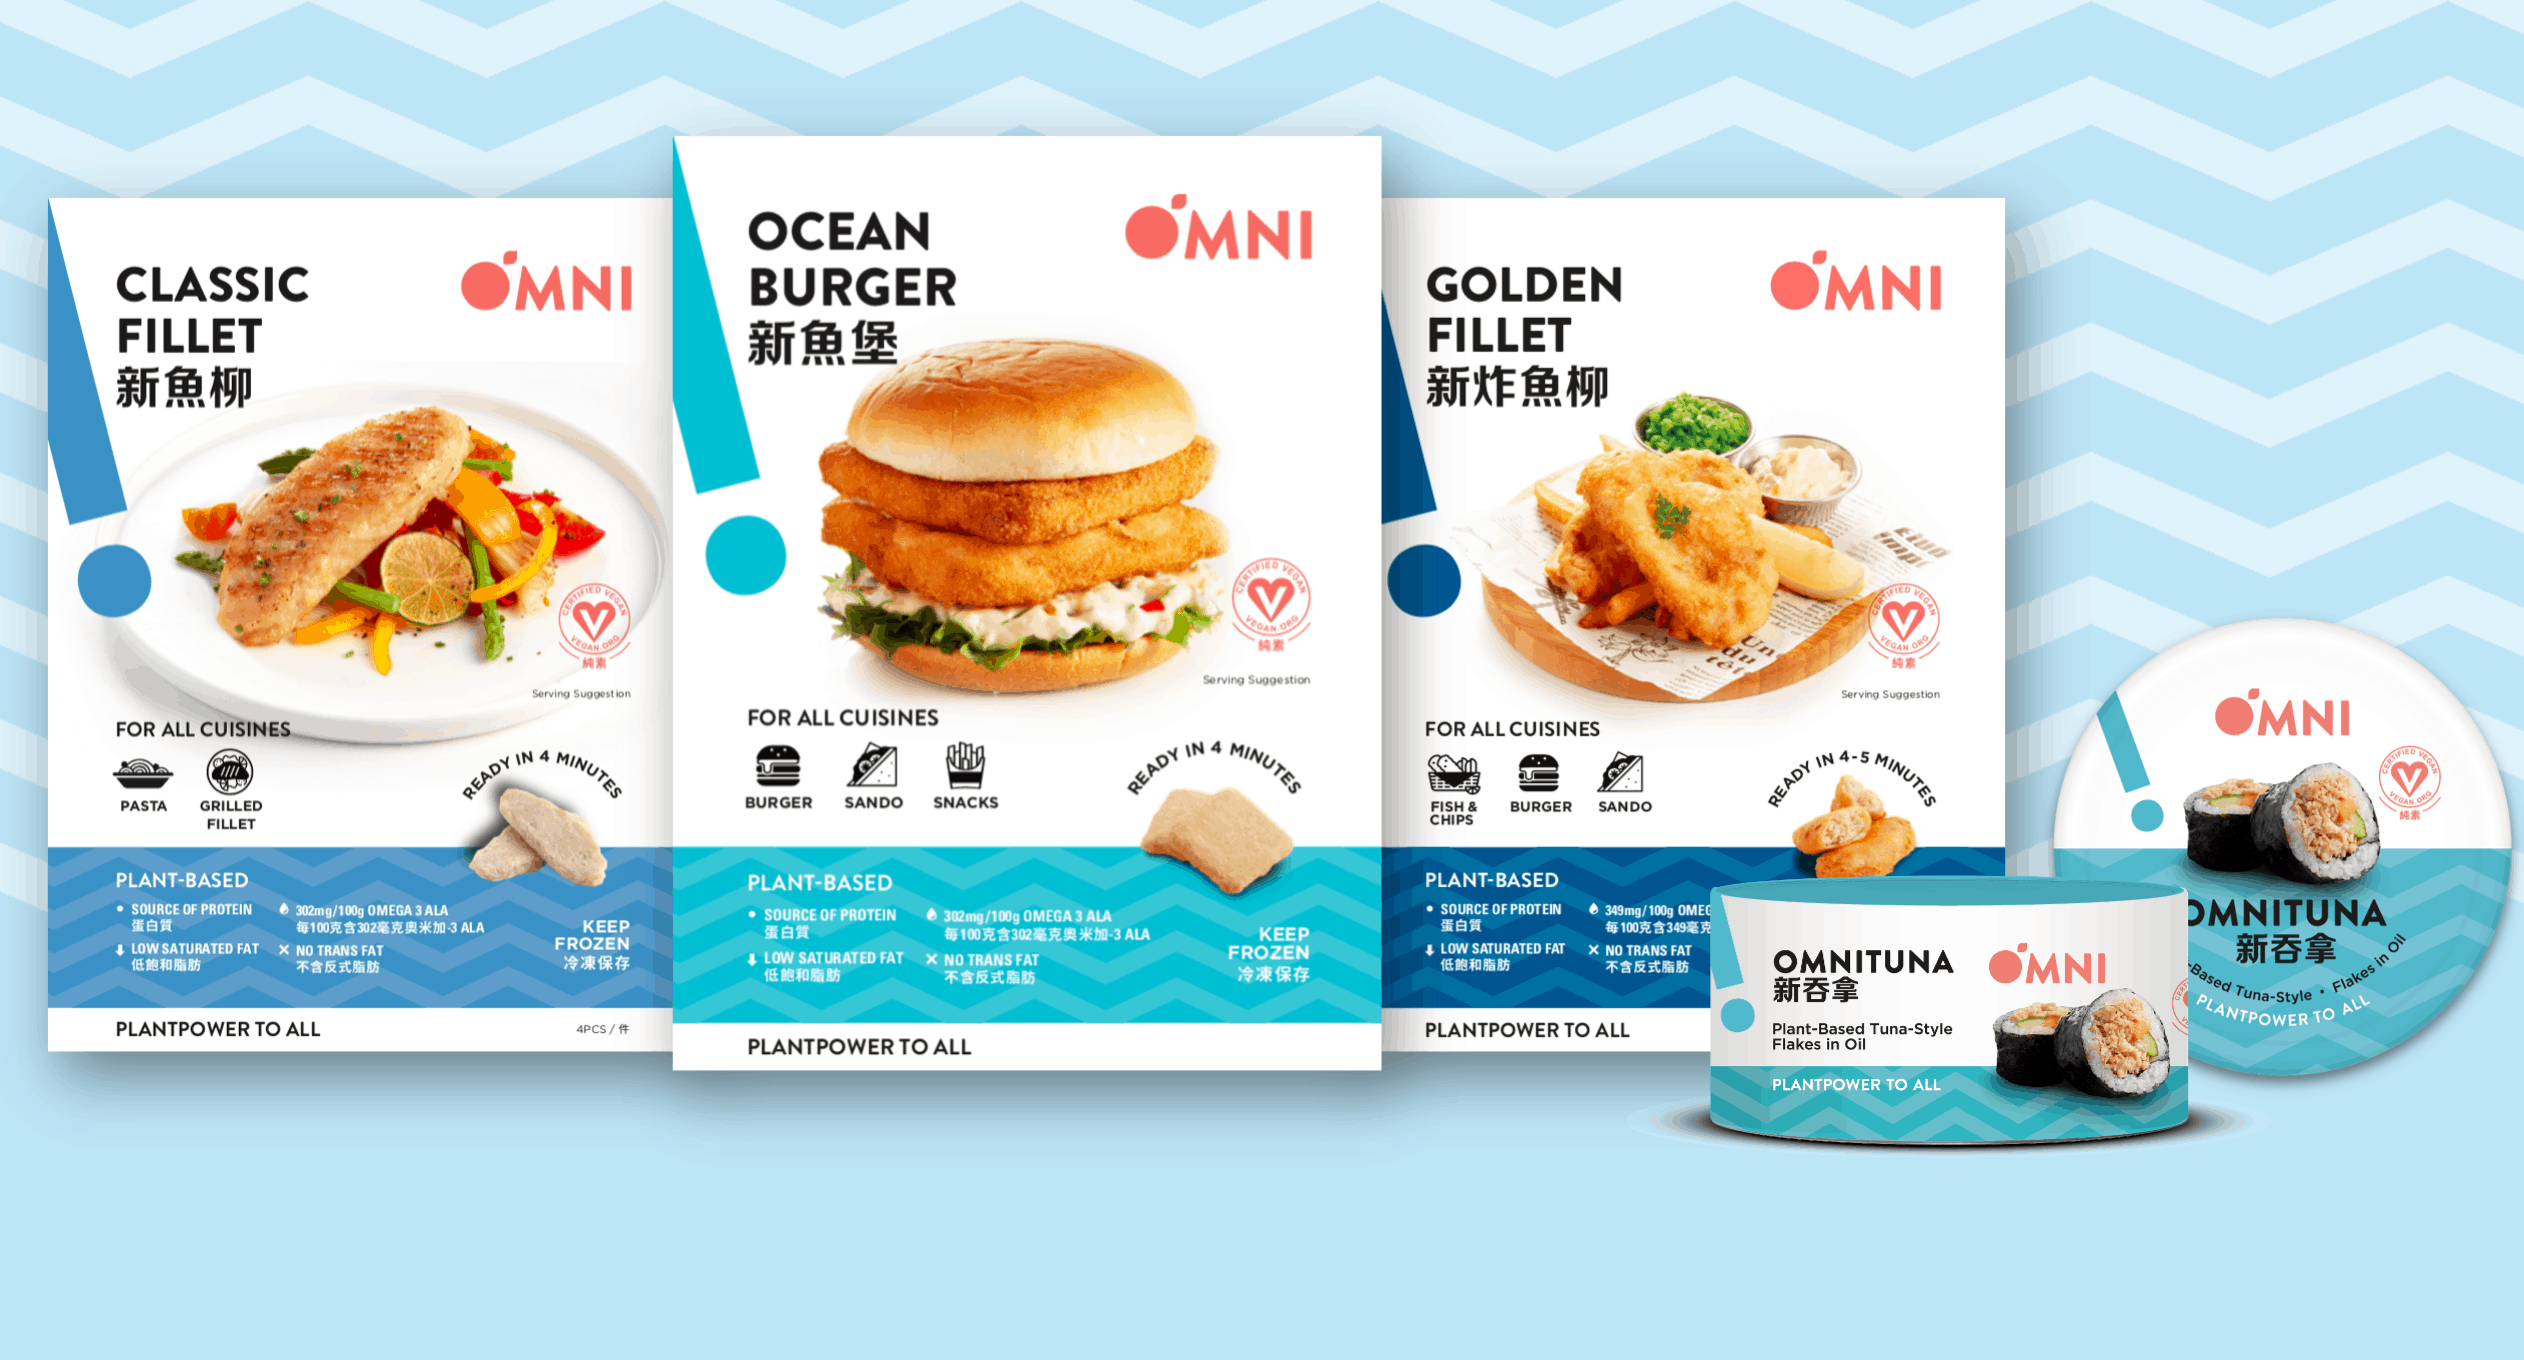 Omni Seafood range OmniFoods